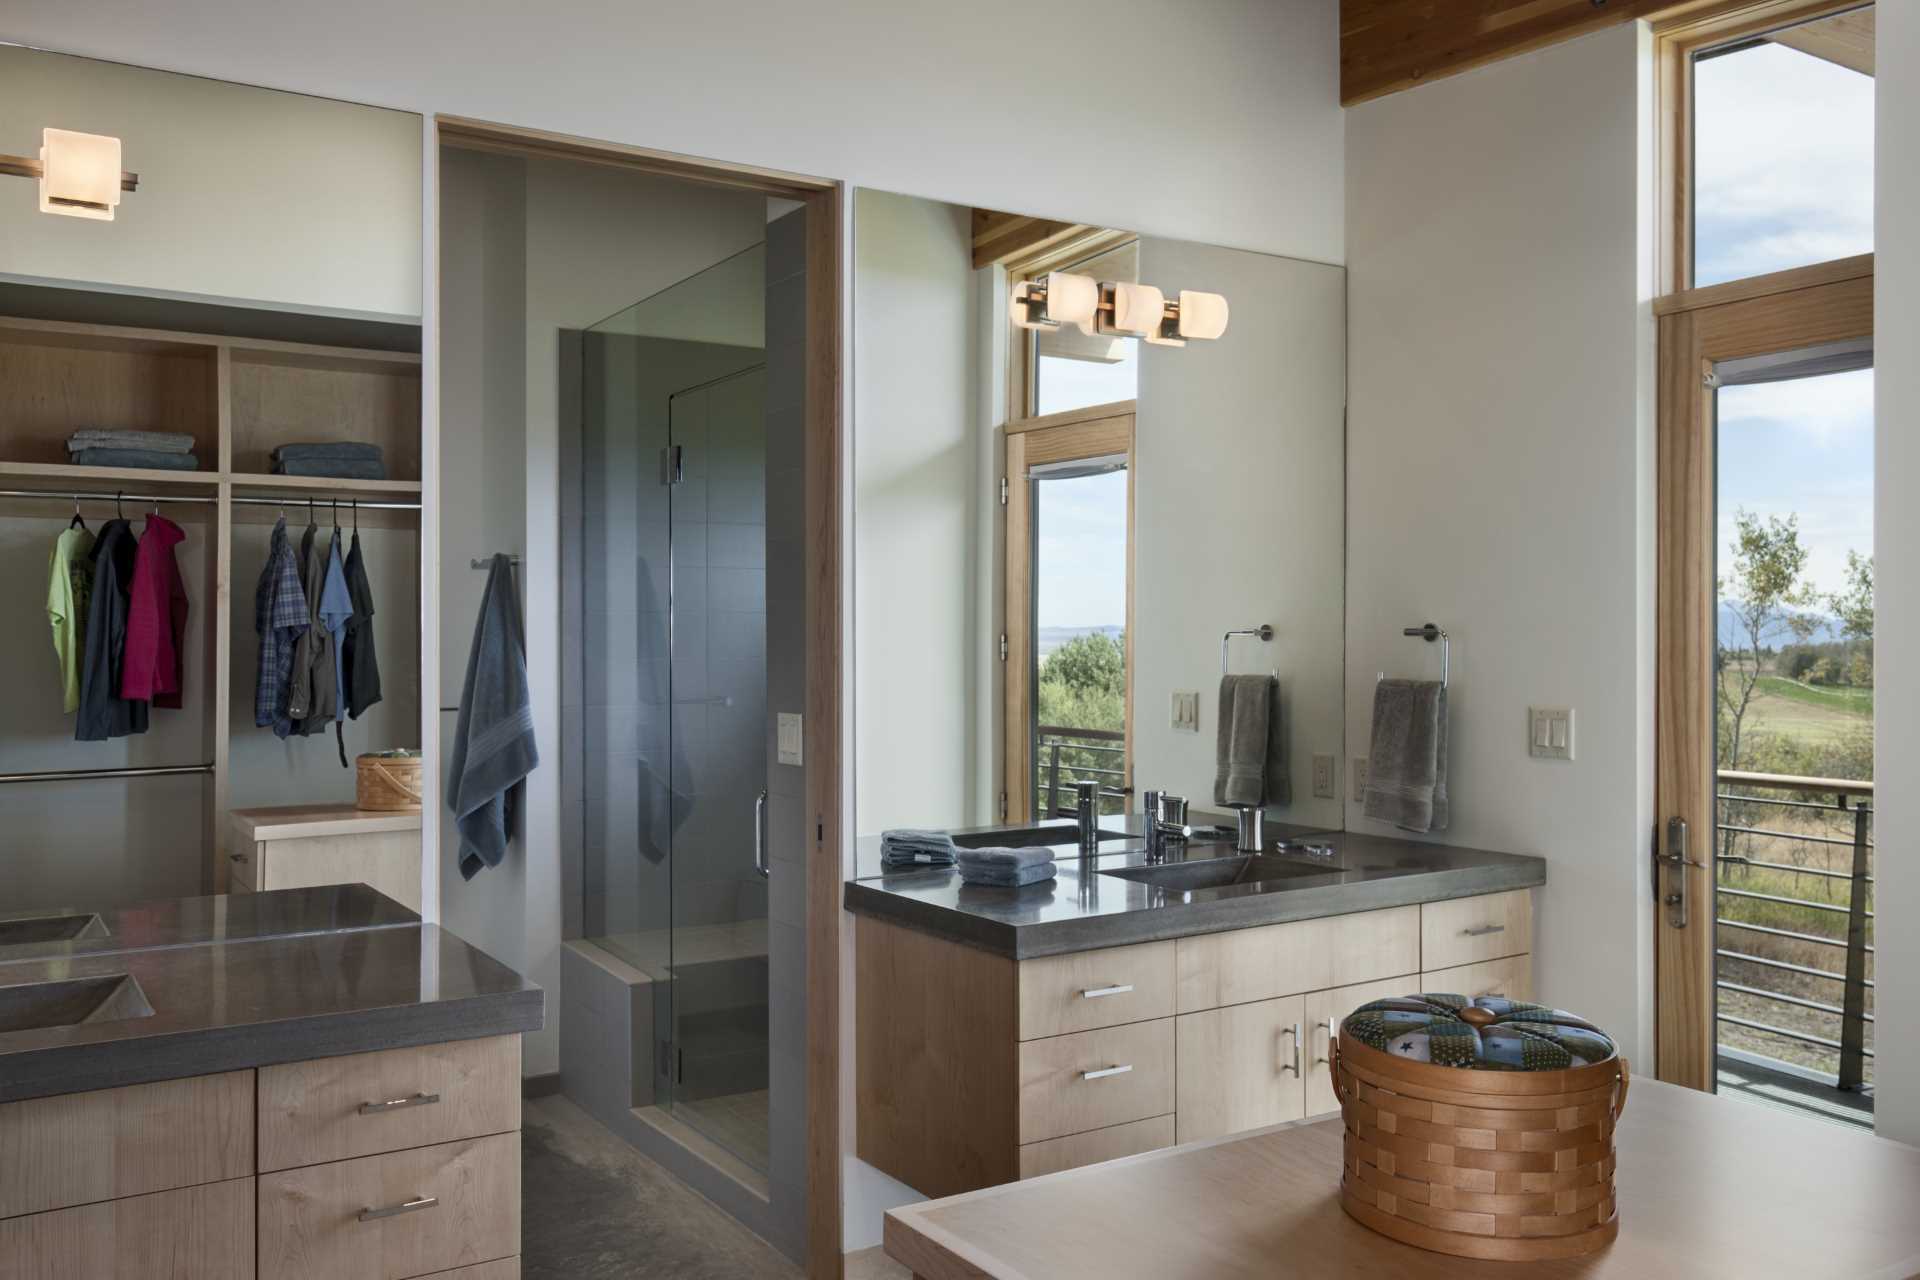 În această baie, vanurile duble și un dulap personalizat oferă spațiu amplu de depozitare, în timp ce dușul este situat printr-o ușă.